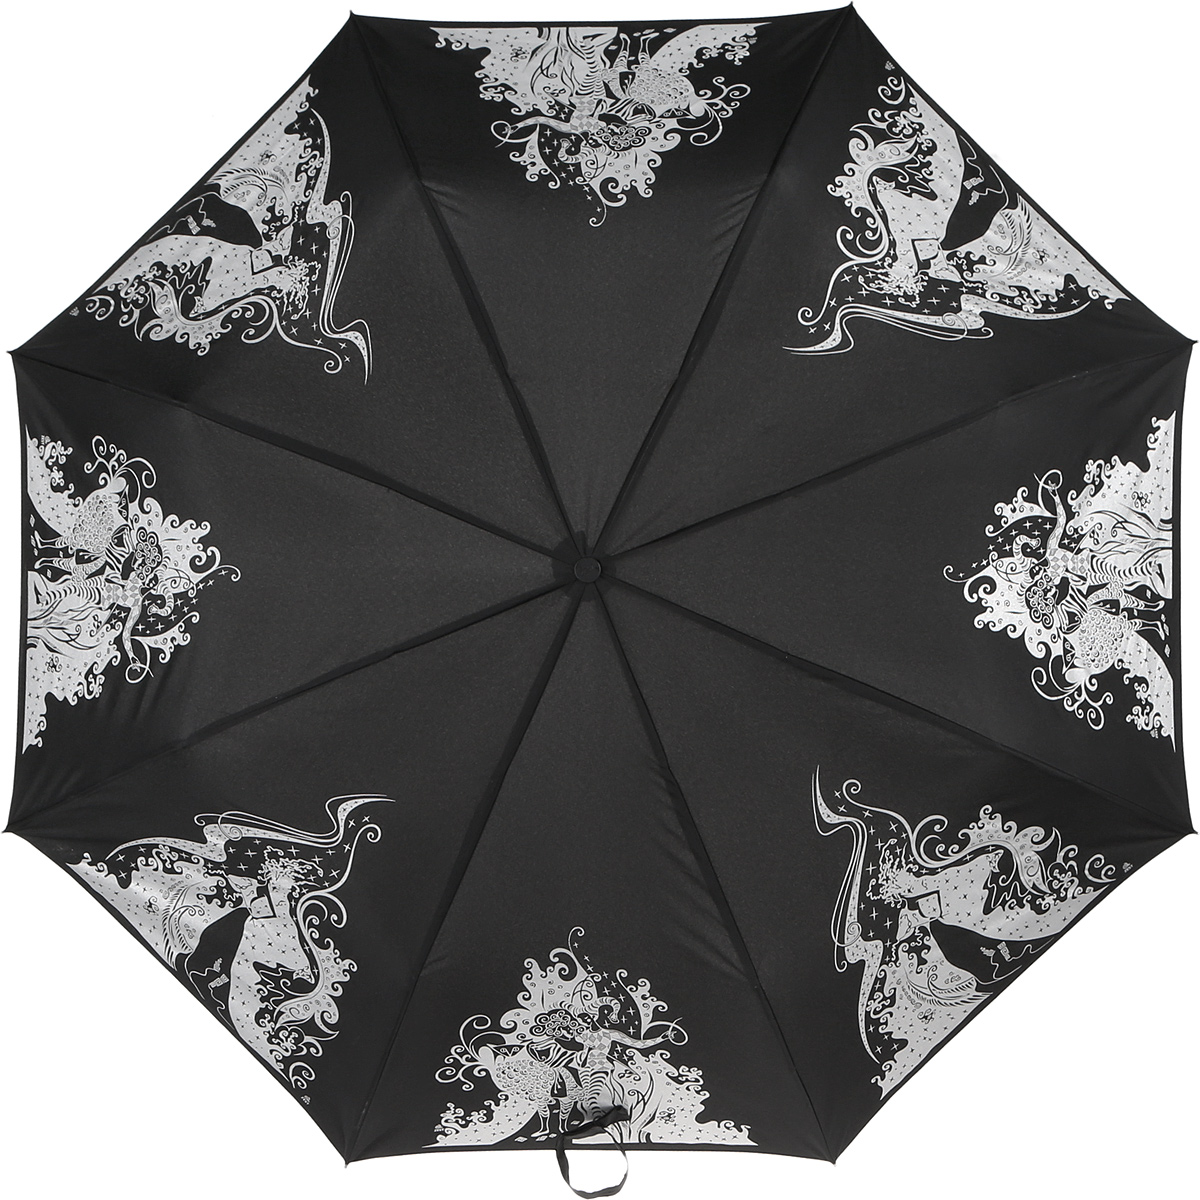 Зонт женский Zest, автомат, 3 сложения, цвет: черный, белый. 23849-1338